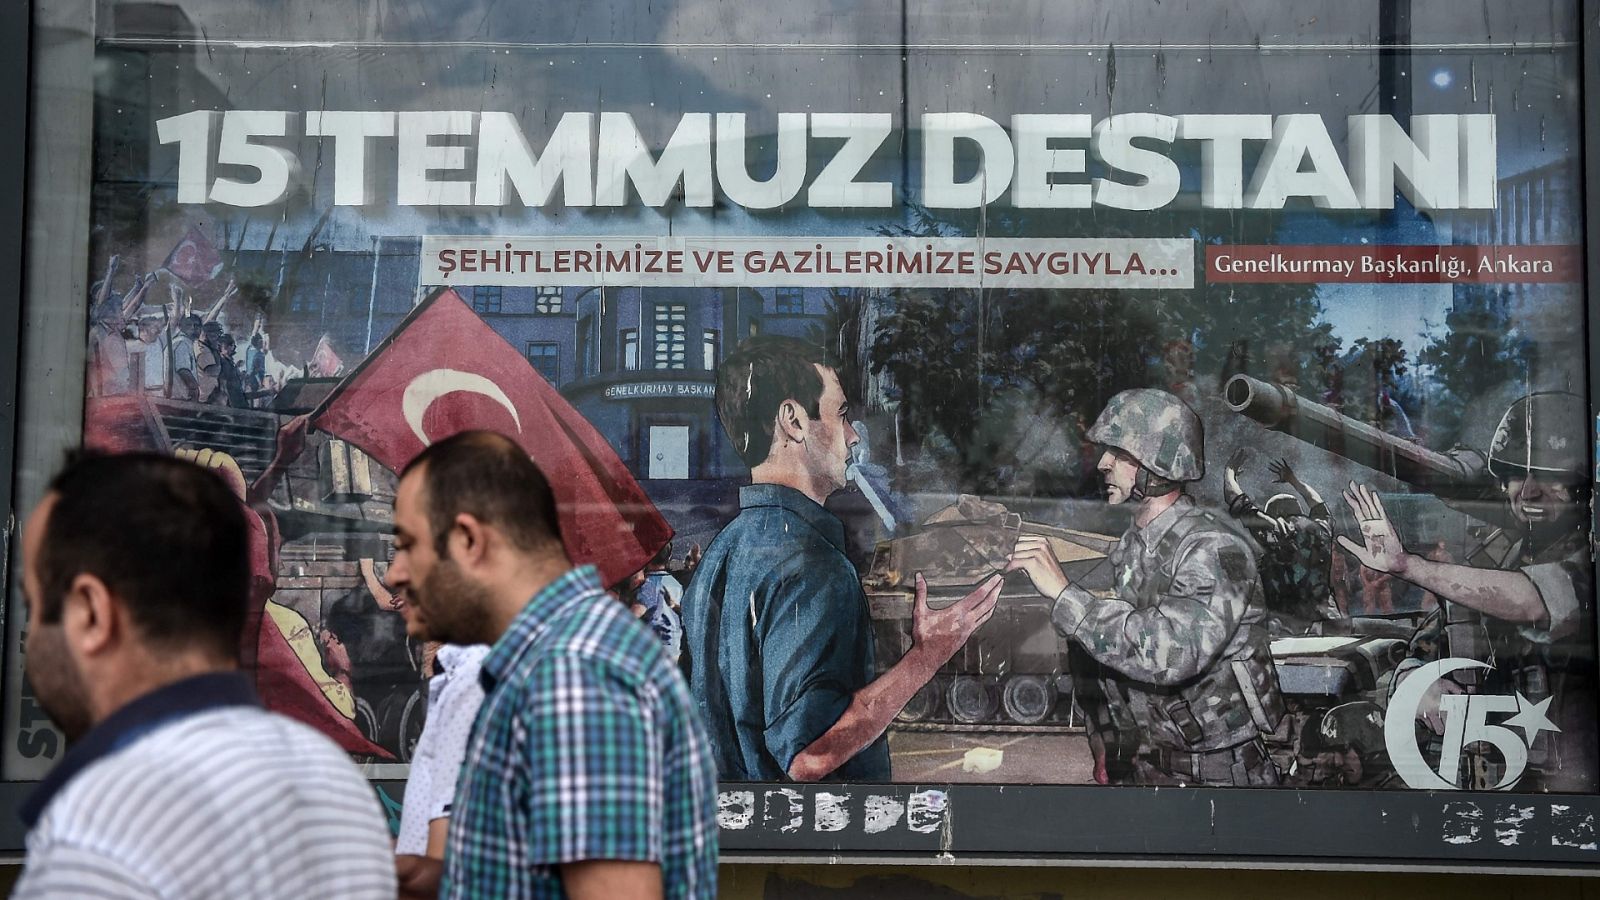 Imagen de 2017 en la que se conmemora el aniversario del fallido golpe de Estado contra Erdogan